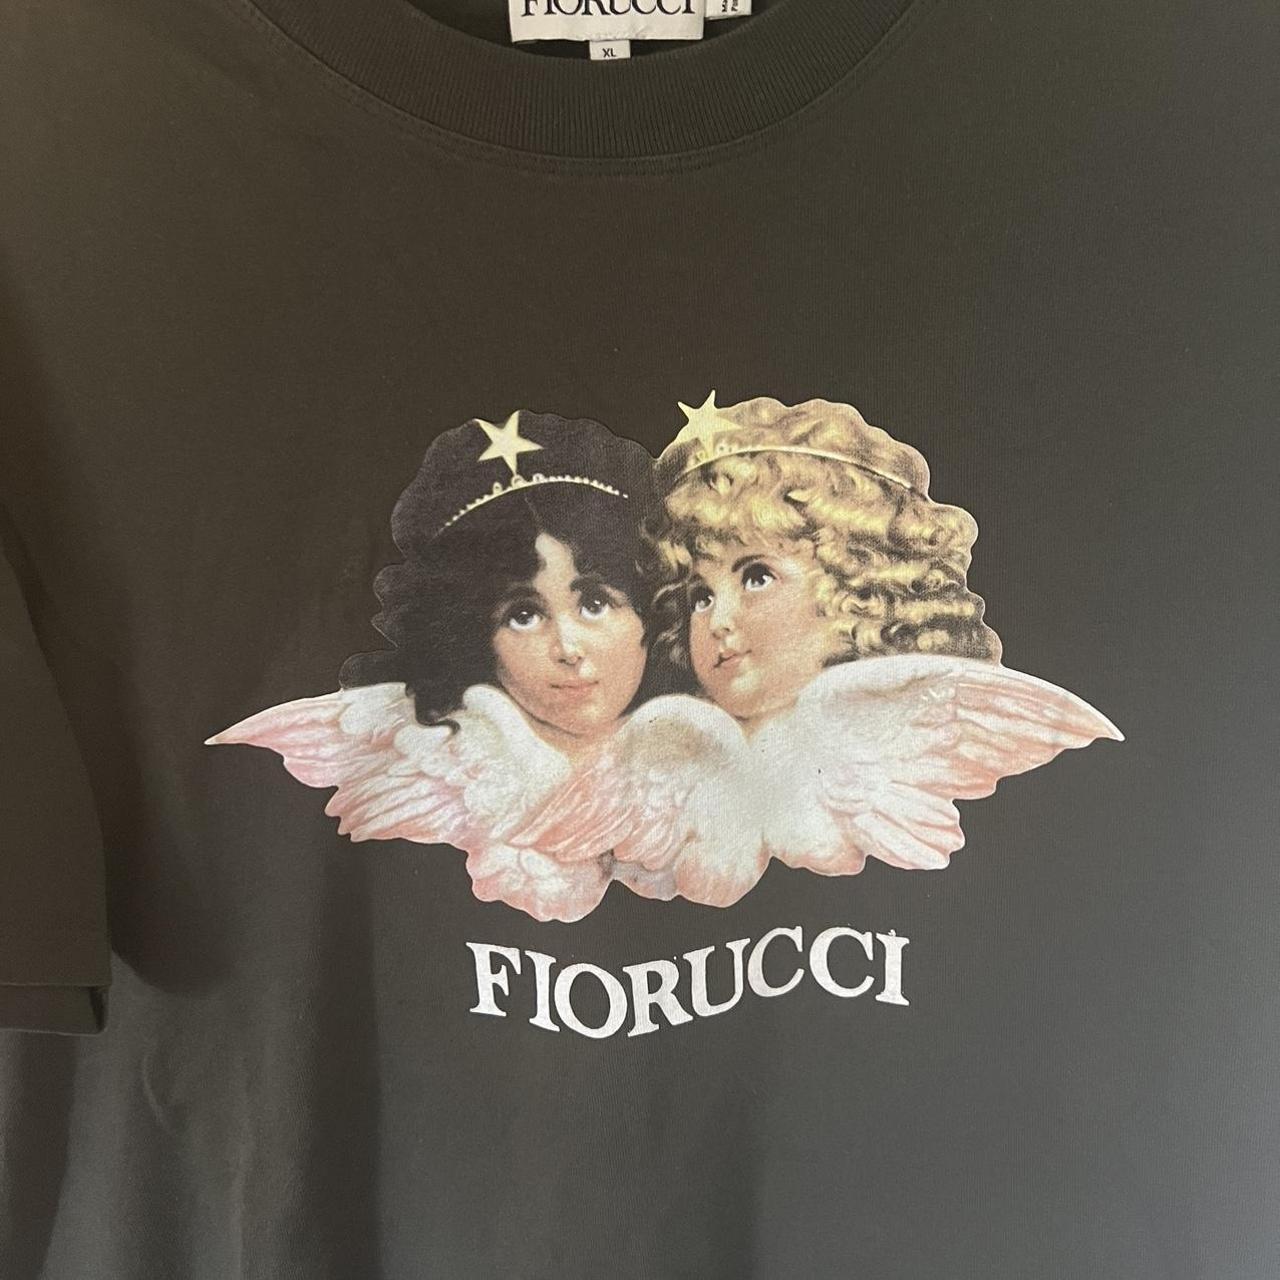 Fiorucci Women's T-shirt | Depop